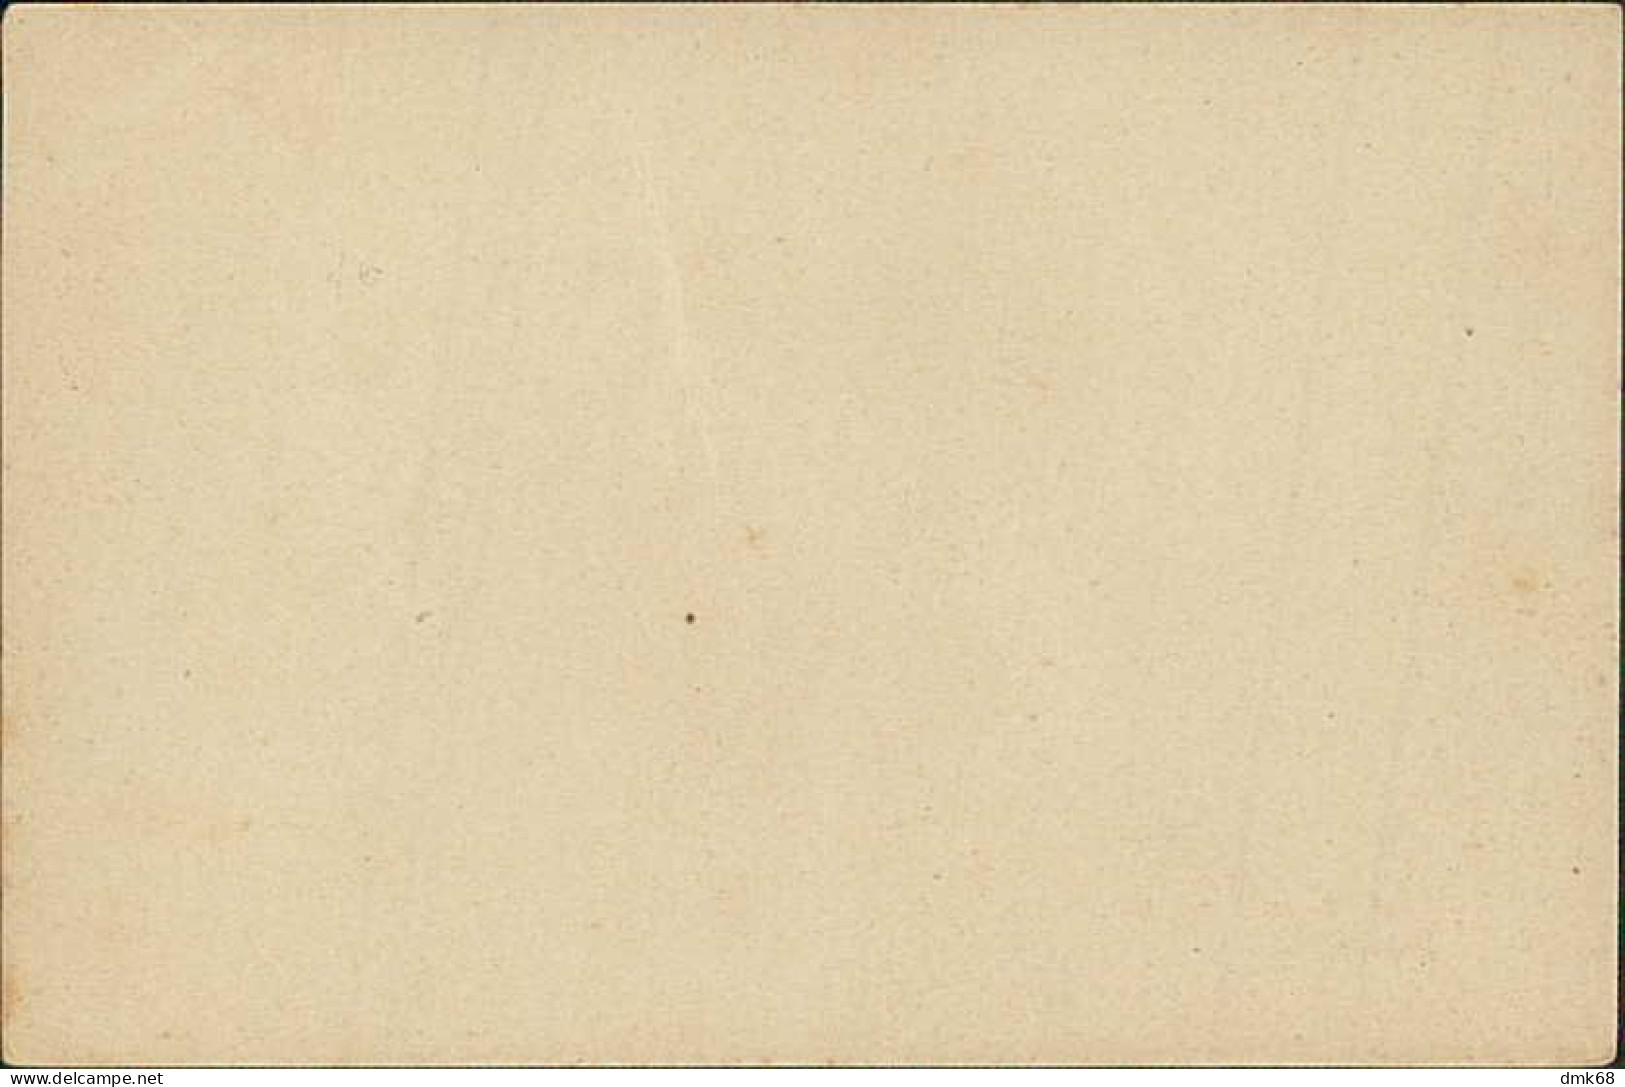 EAST TIMOR - BILHETE POSTAL - 1498 / 1898 - PORTA LATERAL DOS JERONIMOS / LISBOA - PRINTED STAMP - TIMOR 2 AVOS (18354) - Osttimor